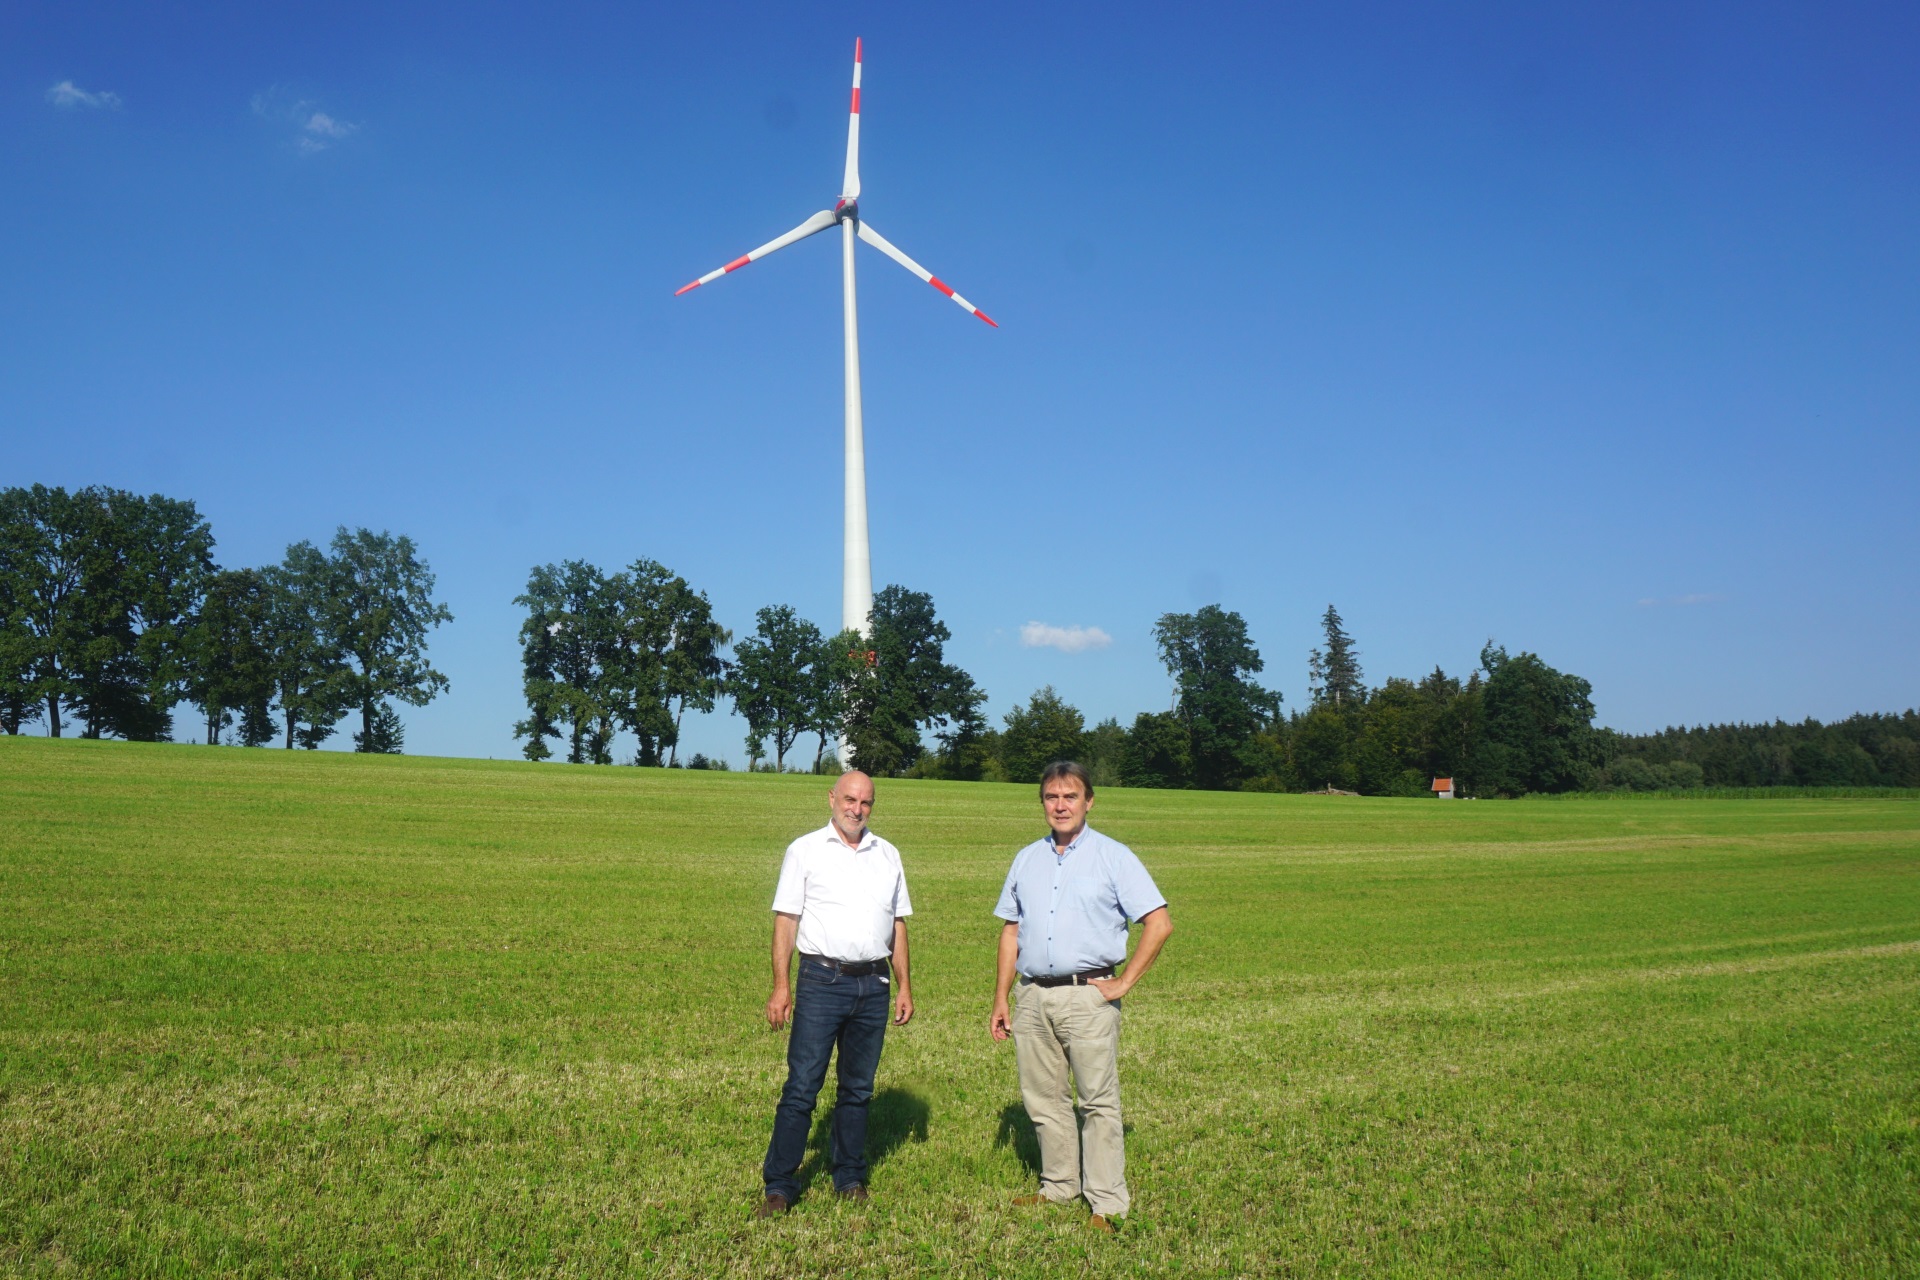 KUMS-Vorstand Wagner mit Gröbmayr, GF i.R. der Energieagentur Ebersberg-München im Gespräch vor einem Windrad